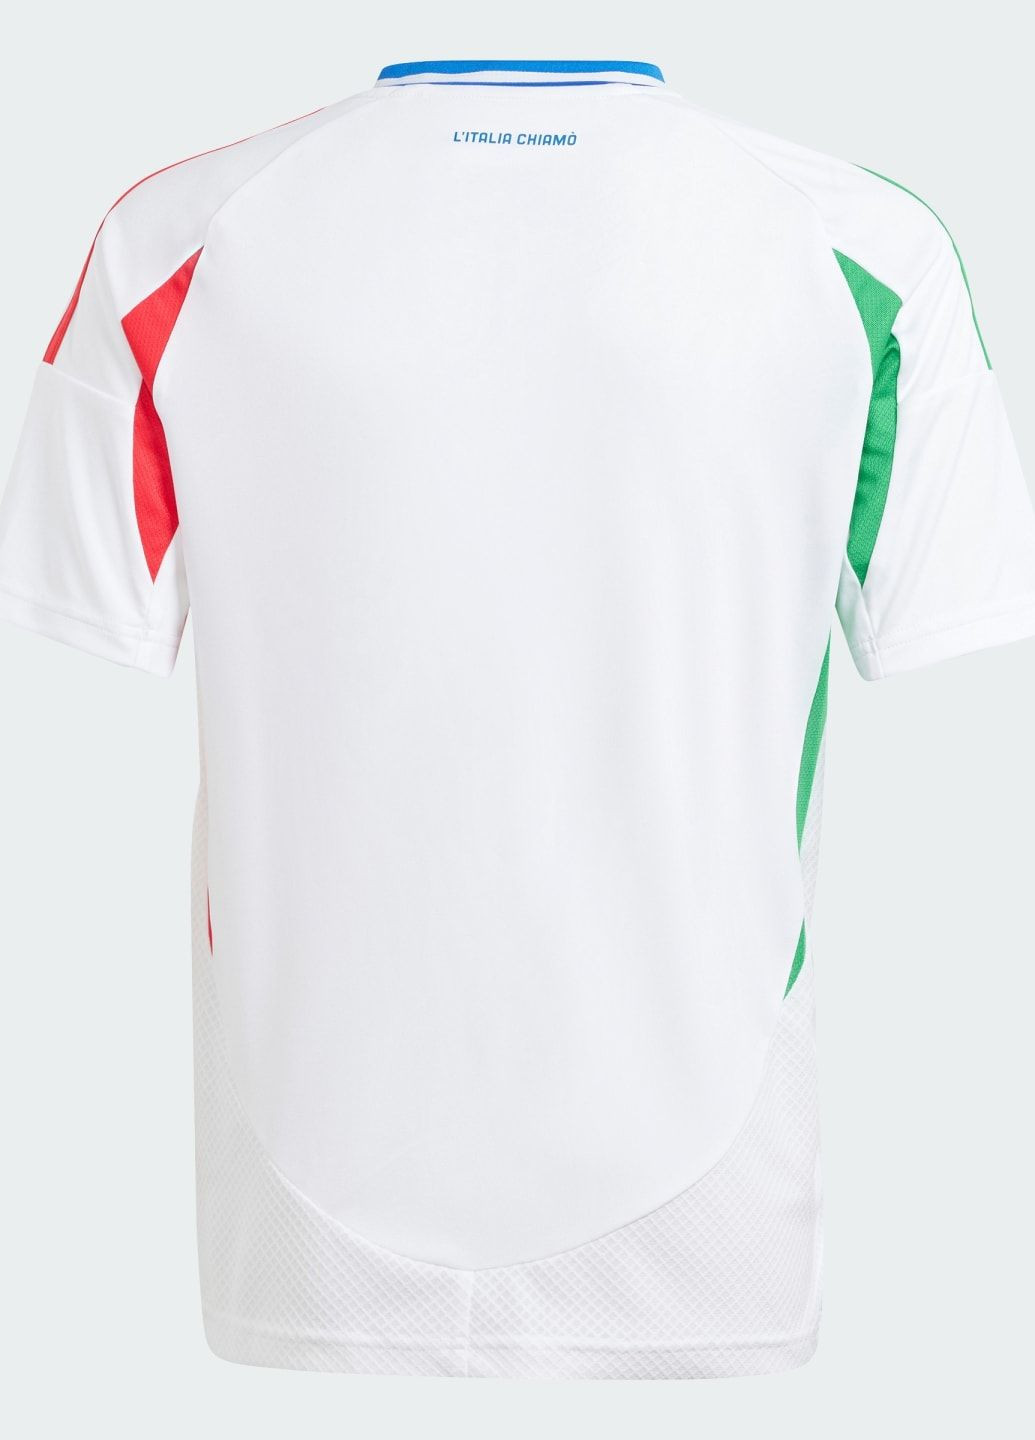 Джерсі Italy 24 Away Kids adidas (284664338)